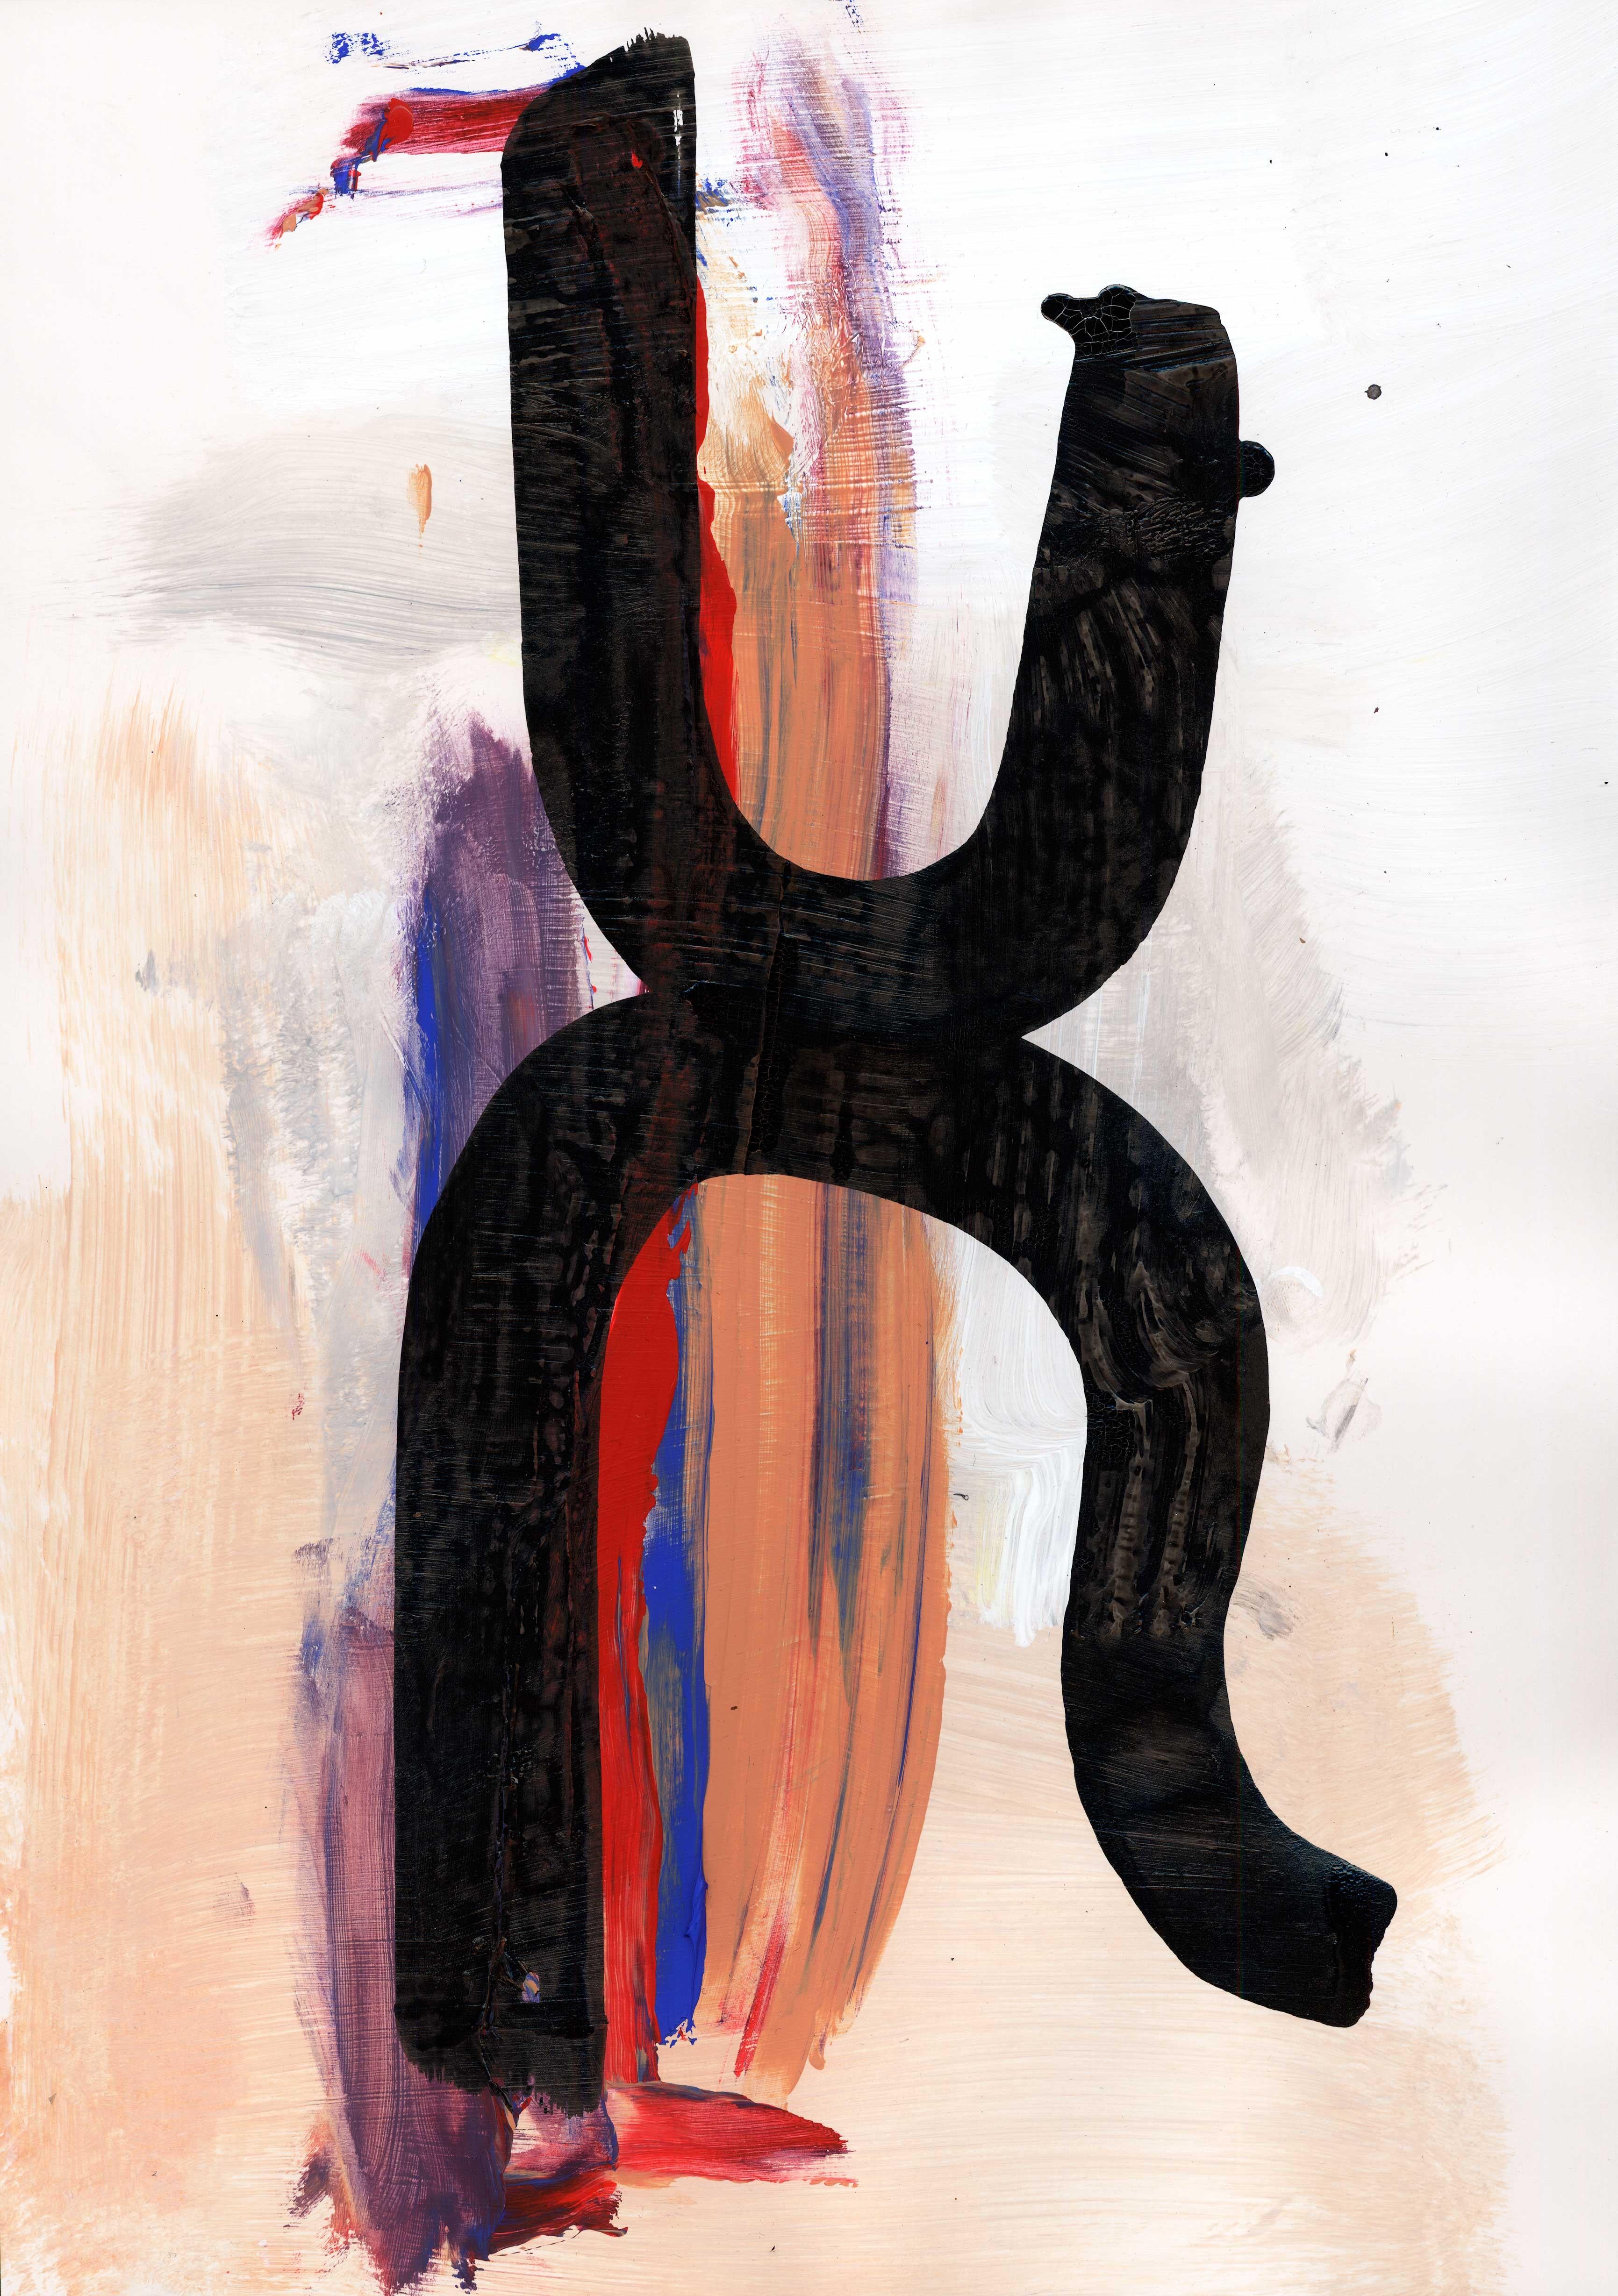 Monument Forms est une série de peintures abstraites modernes de Louis Jobst qui expérimente avec la forme et la couleur. L'accent est mis sur la composition de deux silhouettes noires qui semblent suspendues ou en équilibre dans un paysage